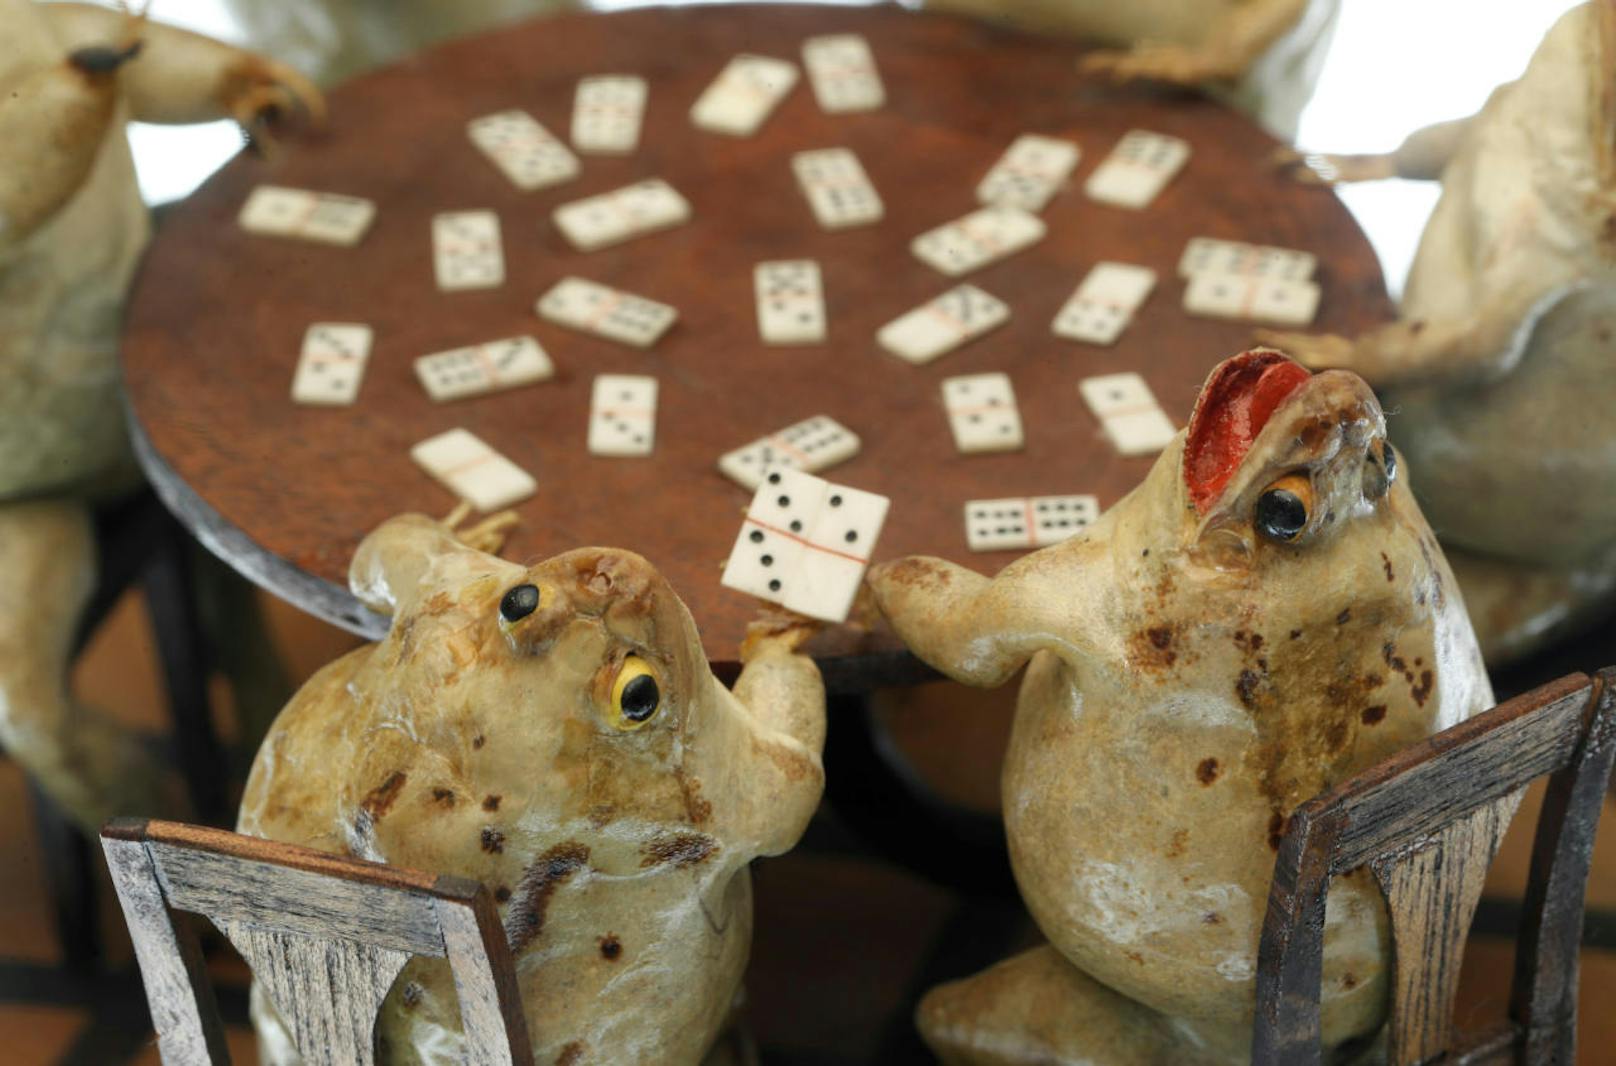 Frösche beim Dominospiel. Im Froschmuseum in Estavayer-le-Lac in der Schweiz stellen 108 ausgestopfte Frösche Alltagsszenen aus dem 19. Jahrhundert dar.